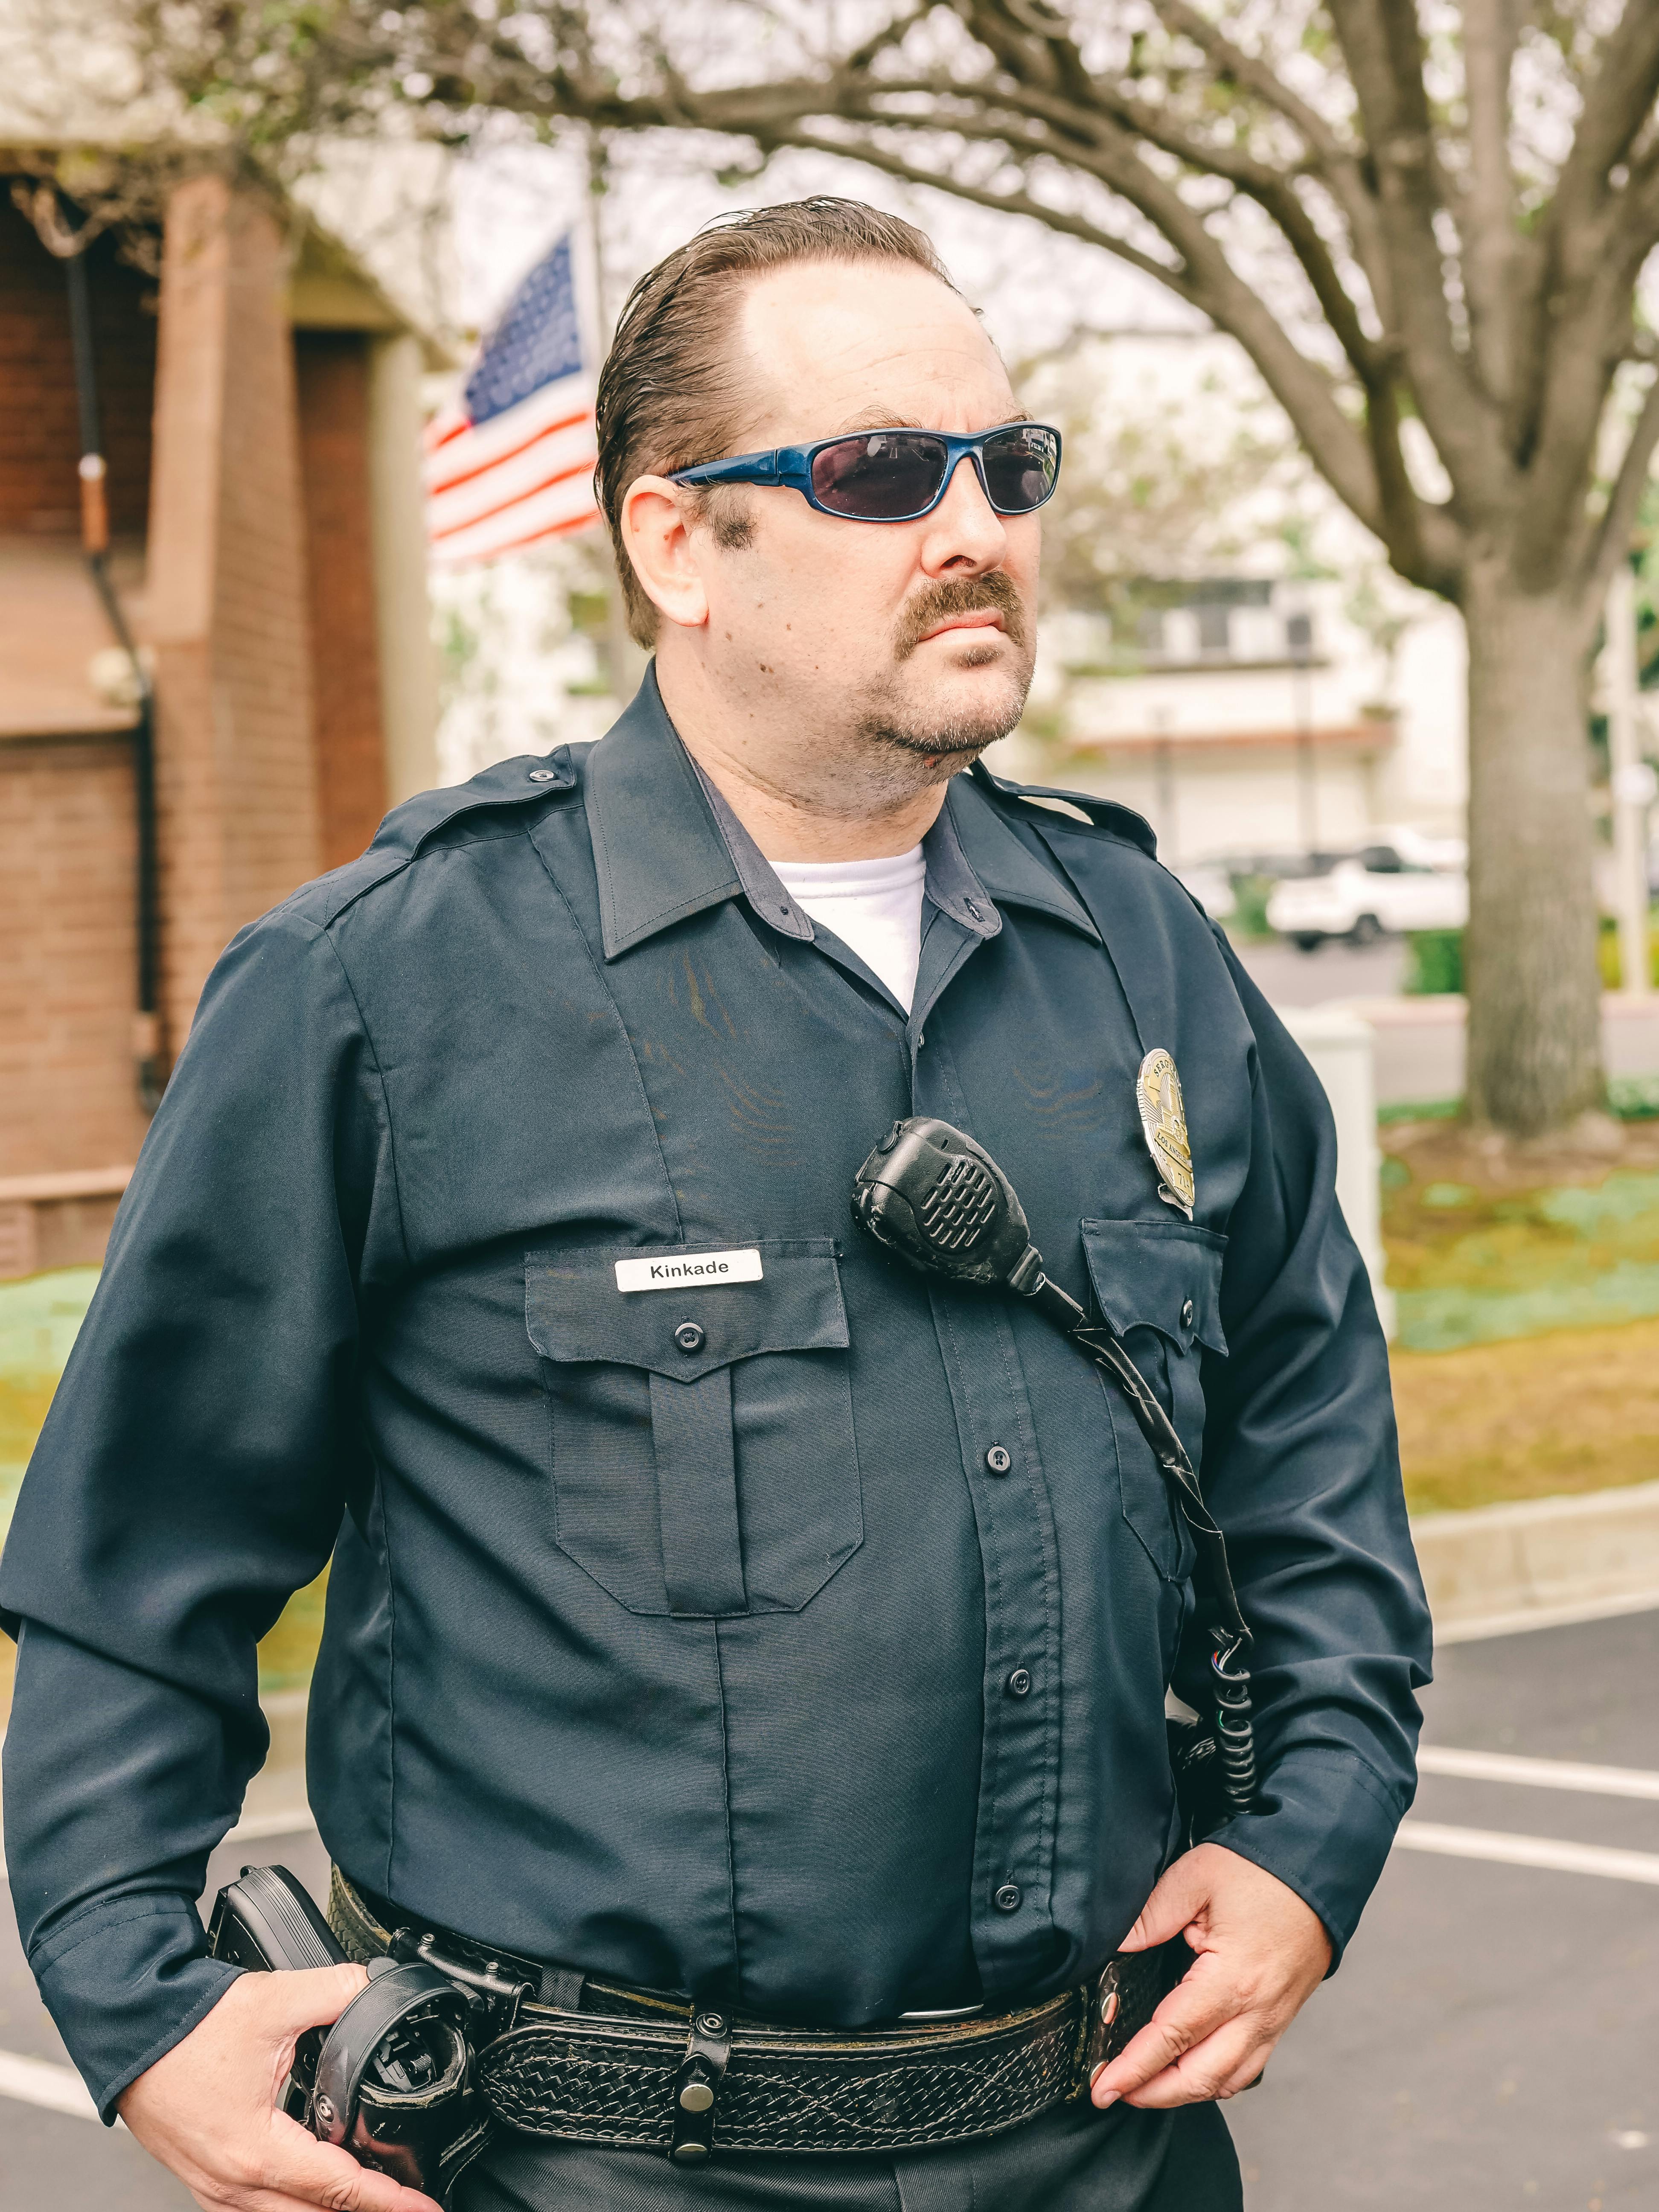 Un policier à l'air sévère | Source : Pexels